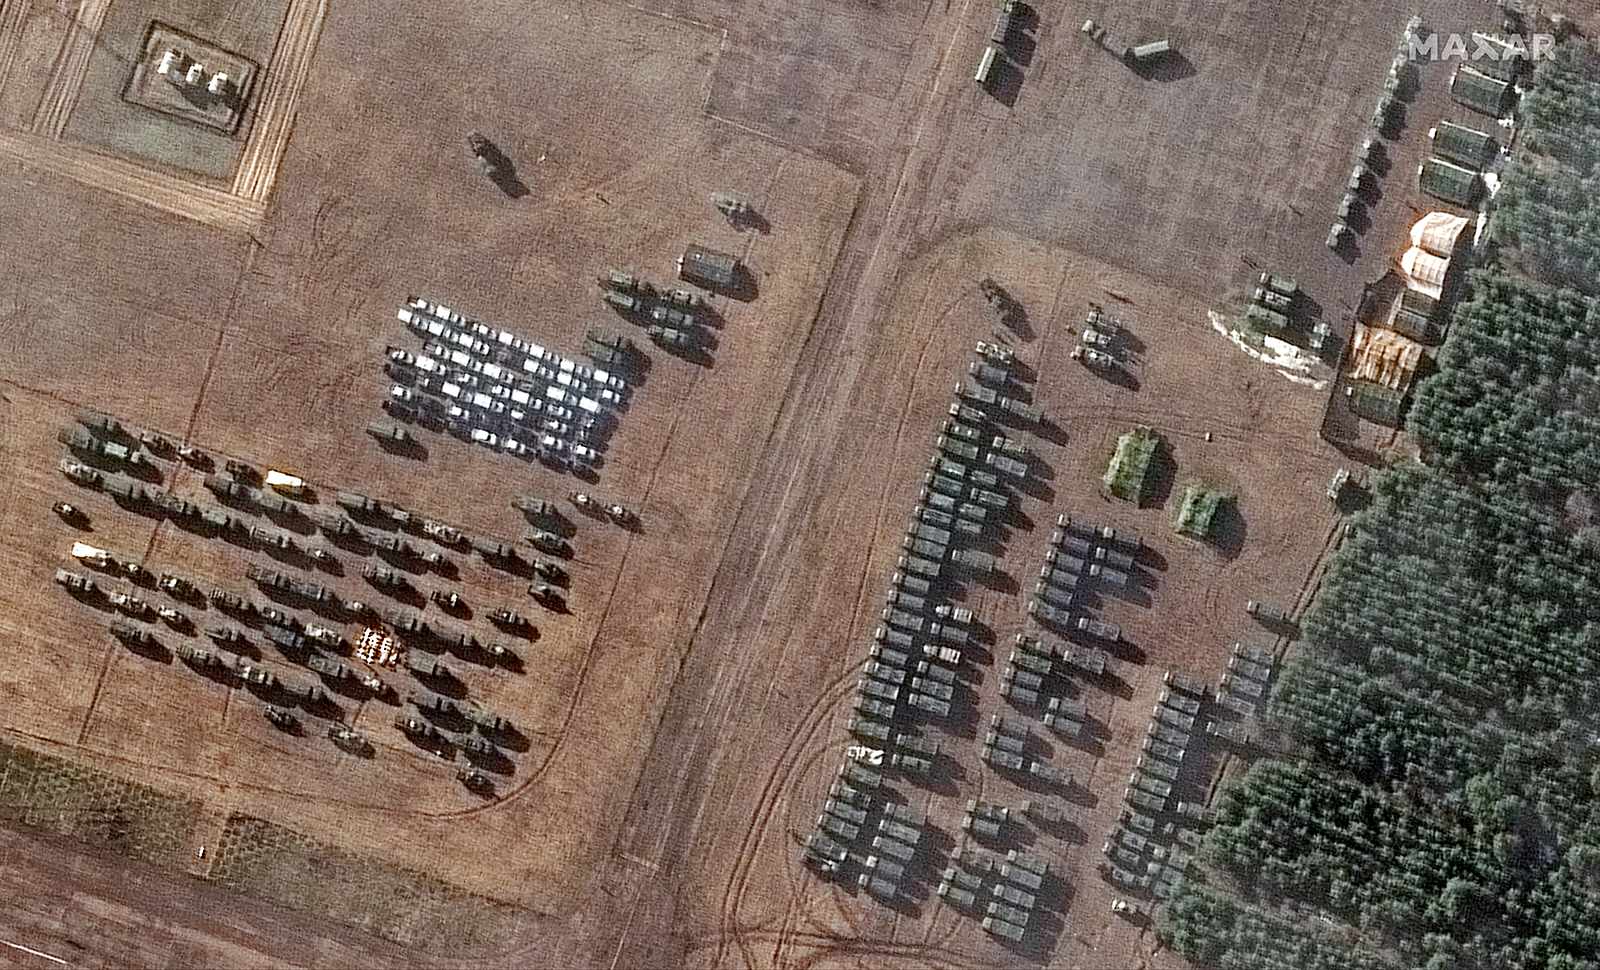 Imagens de satélite mostram dezenas de tendas e veículos que apareceram nos últimos dias no aeroporto a sudoeste de Masir, no sul da Bielorrússia.